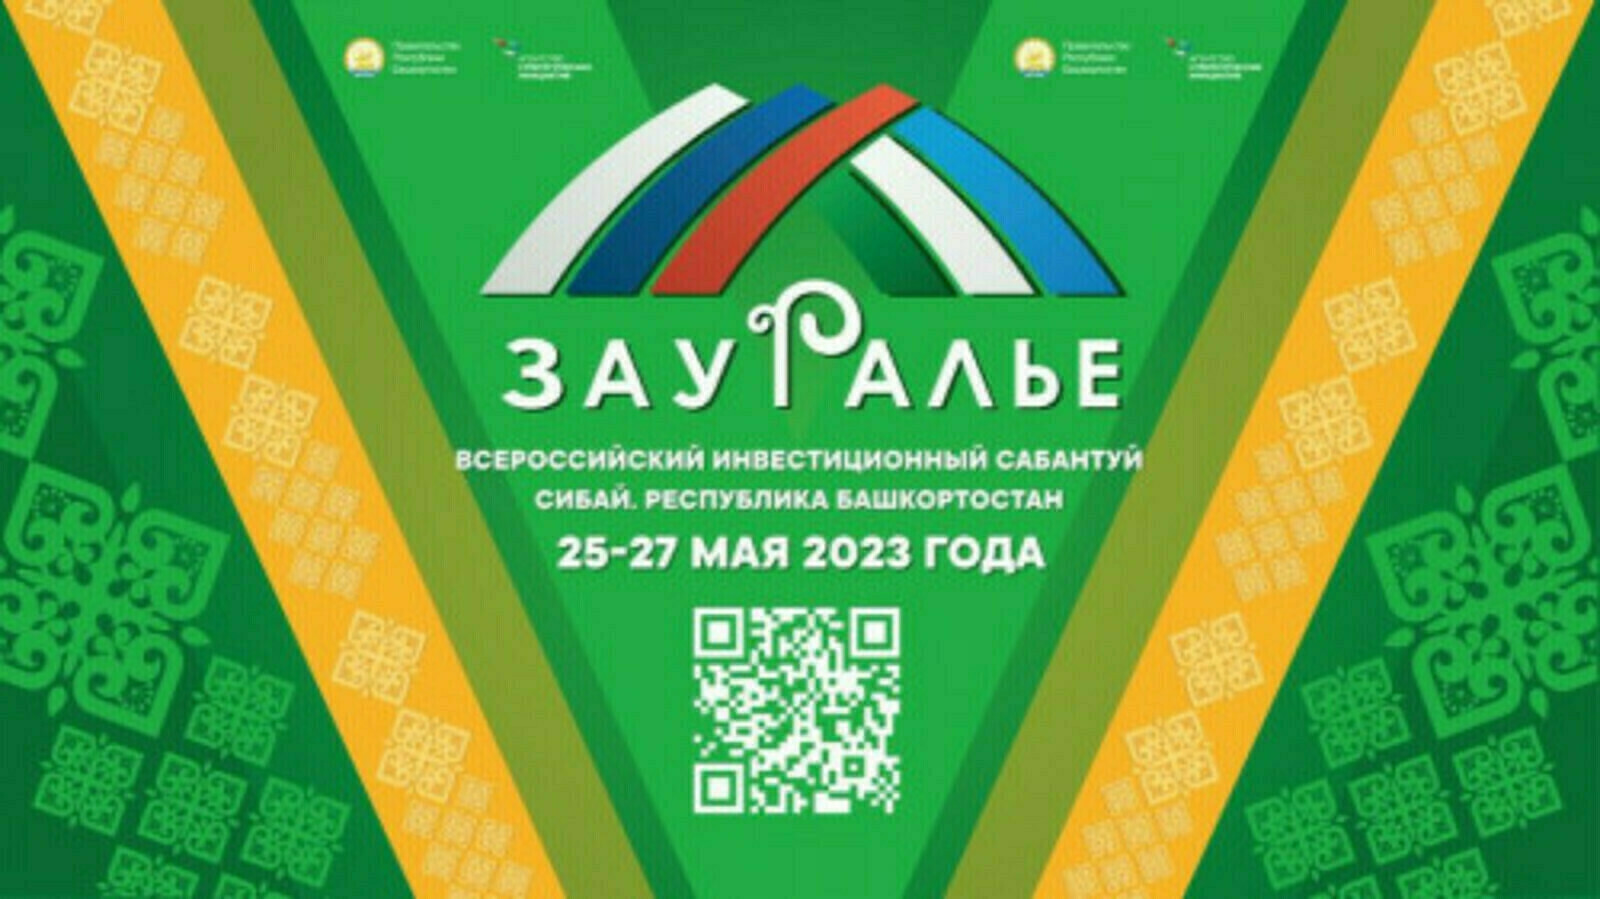 Всего через 6 дней в Сибае стартует Всероссийский инвестиционный сабантуй «Зауралье»!